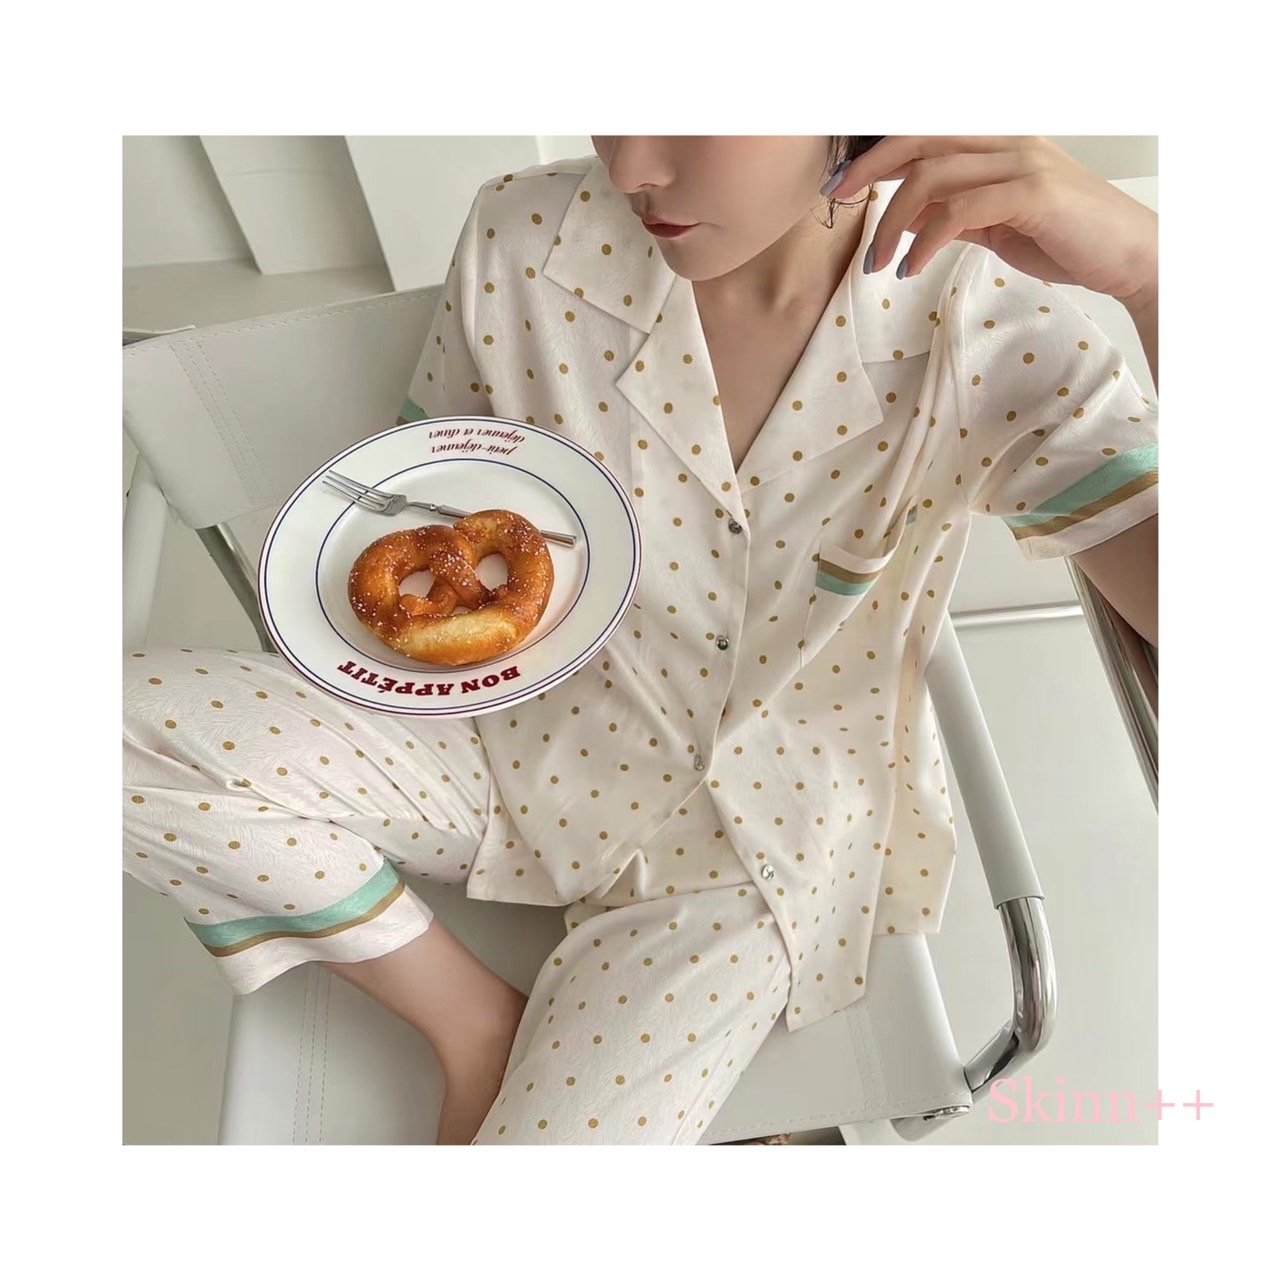 Silky Soft Pajamas by Skinn intimate